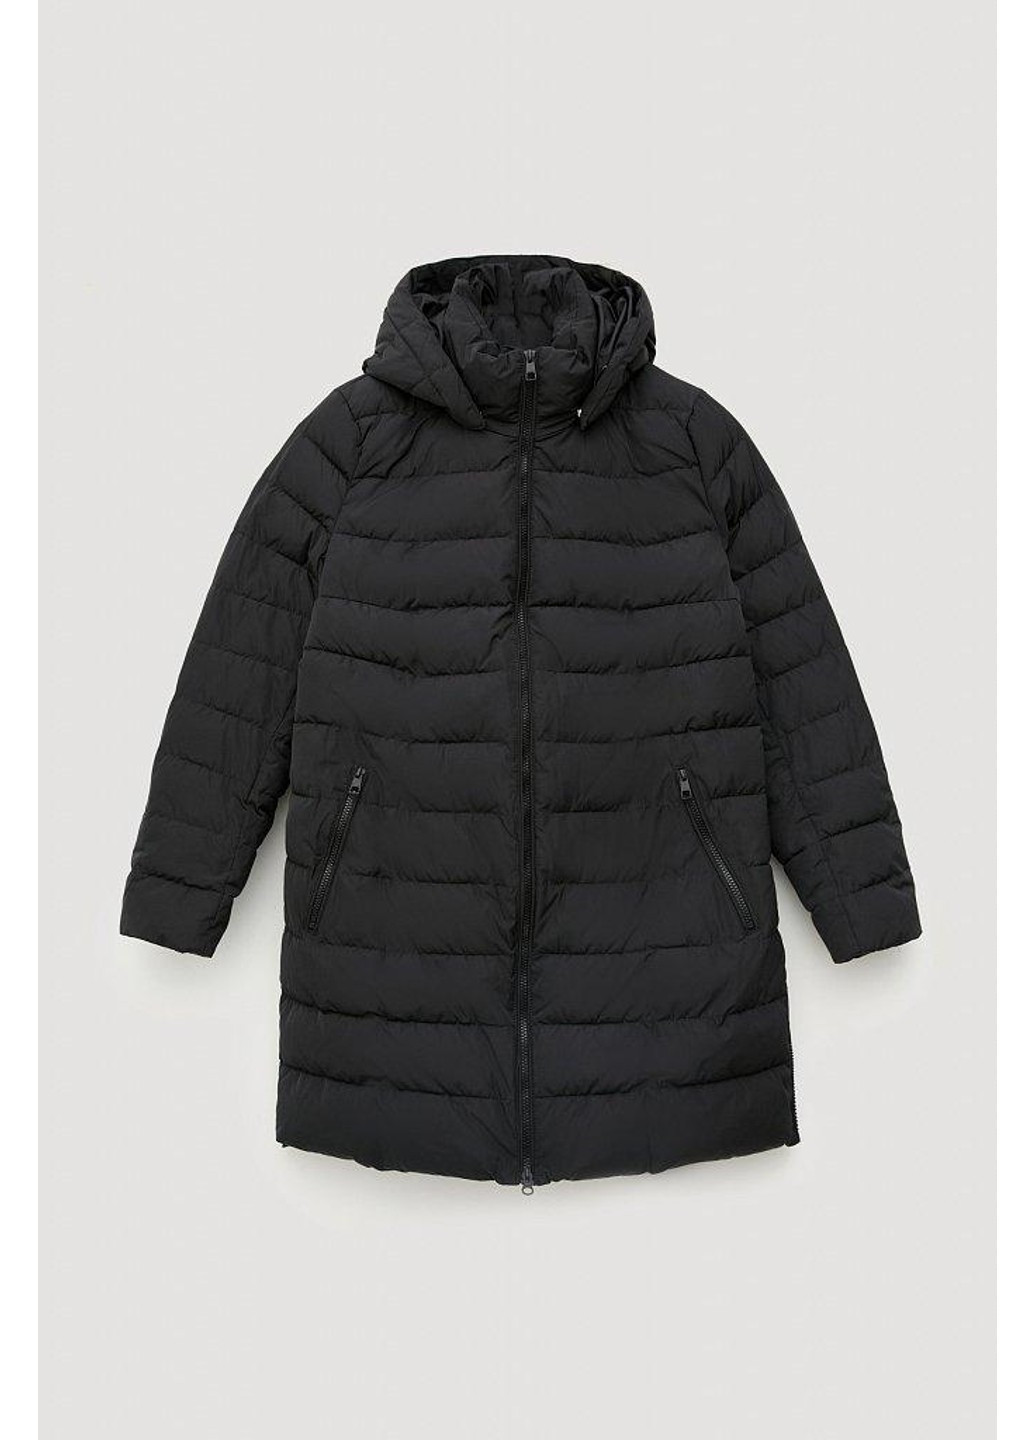 Черная зимняя куртка fwb160133-200 Finn Flare